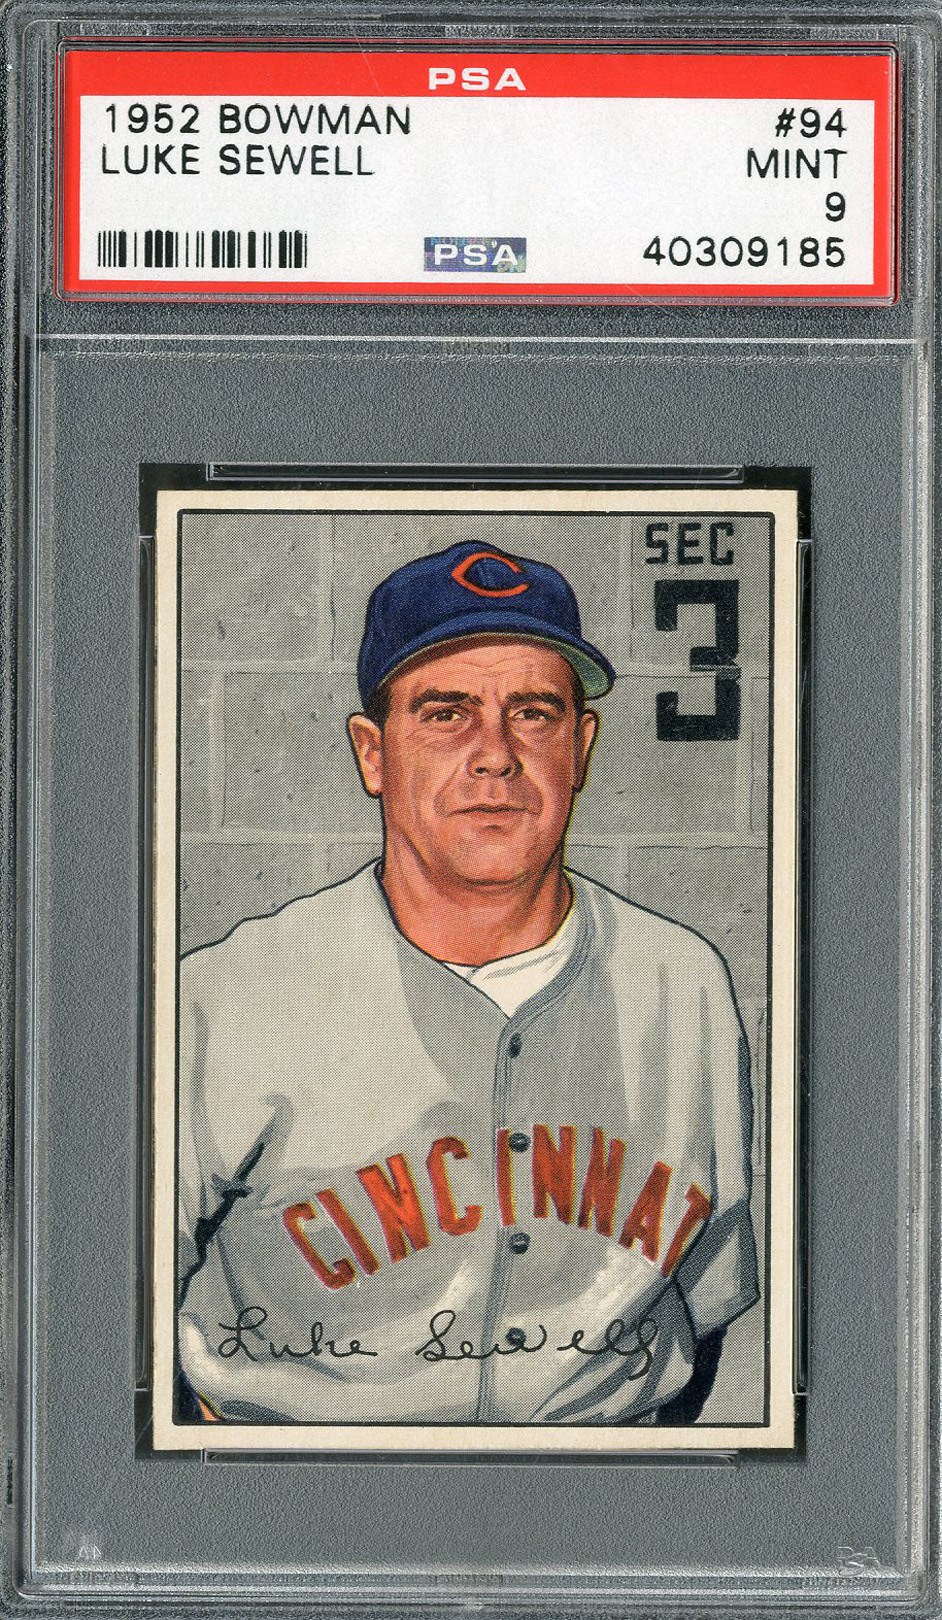 Baseball and Trading Cards - 1952 Bowman #94 Luke Sewell PSA MINT 9